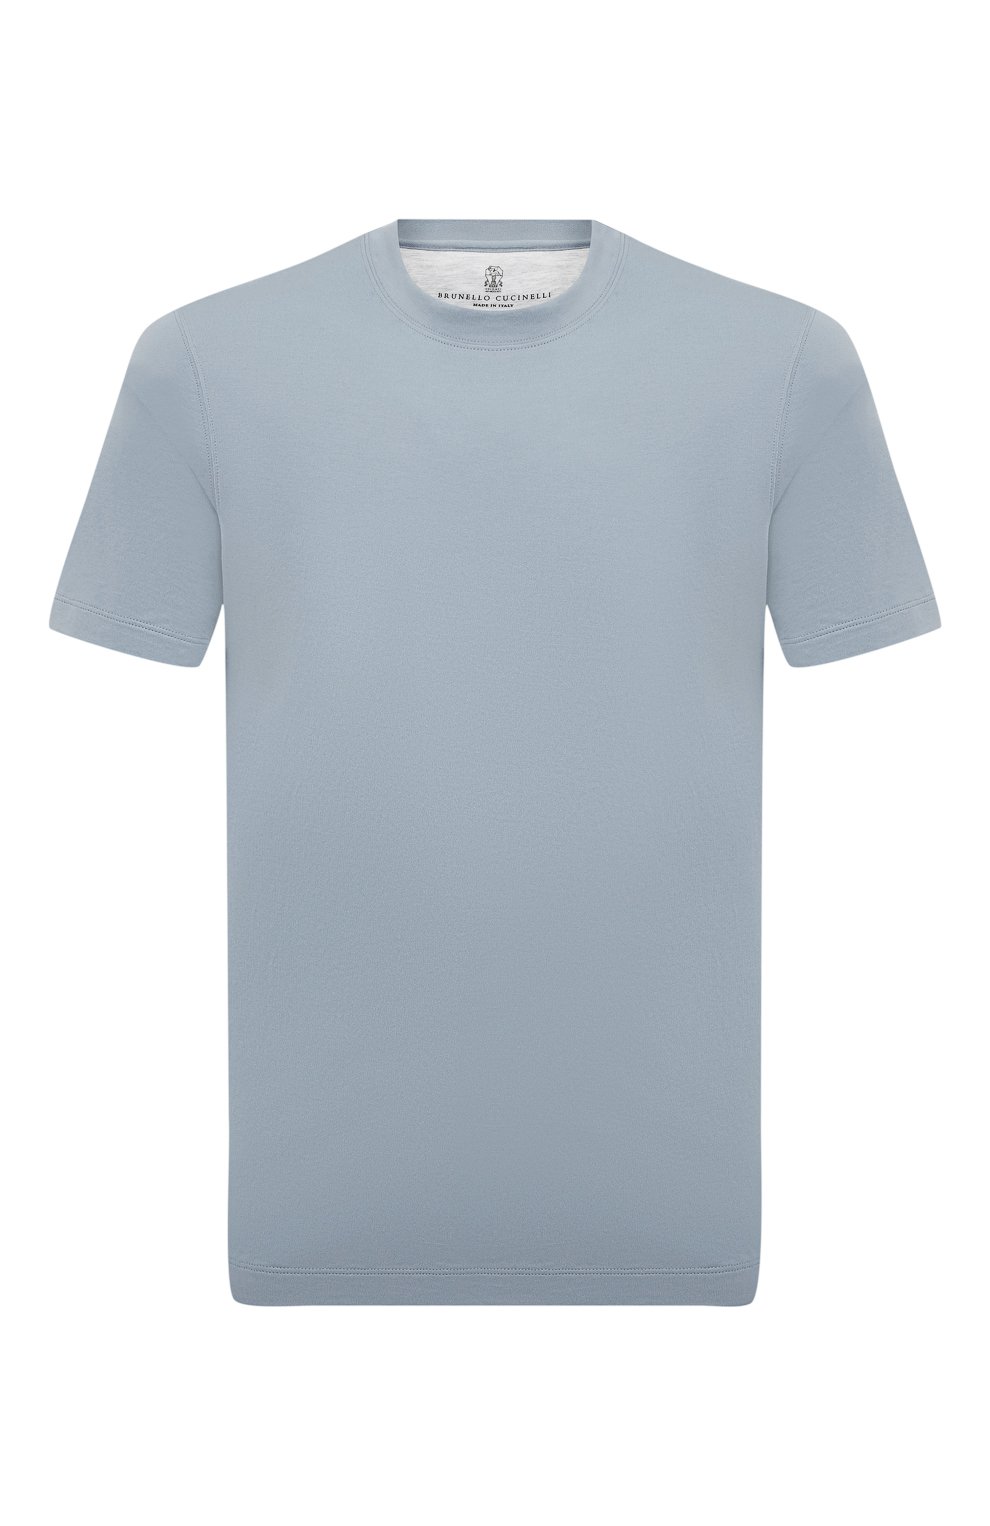 Мужская хлопковая футболка  BRUNELLO CUCINELLI голубого цвета, арт. M0T611308 | Фото 1 (Принт: Без принта; Рукава: Короткие; Длина (для топов): Стандартные; Материал внешний: Хлопок; Размерность: Маломерит; Стили: Кэжуэл)